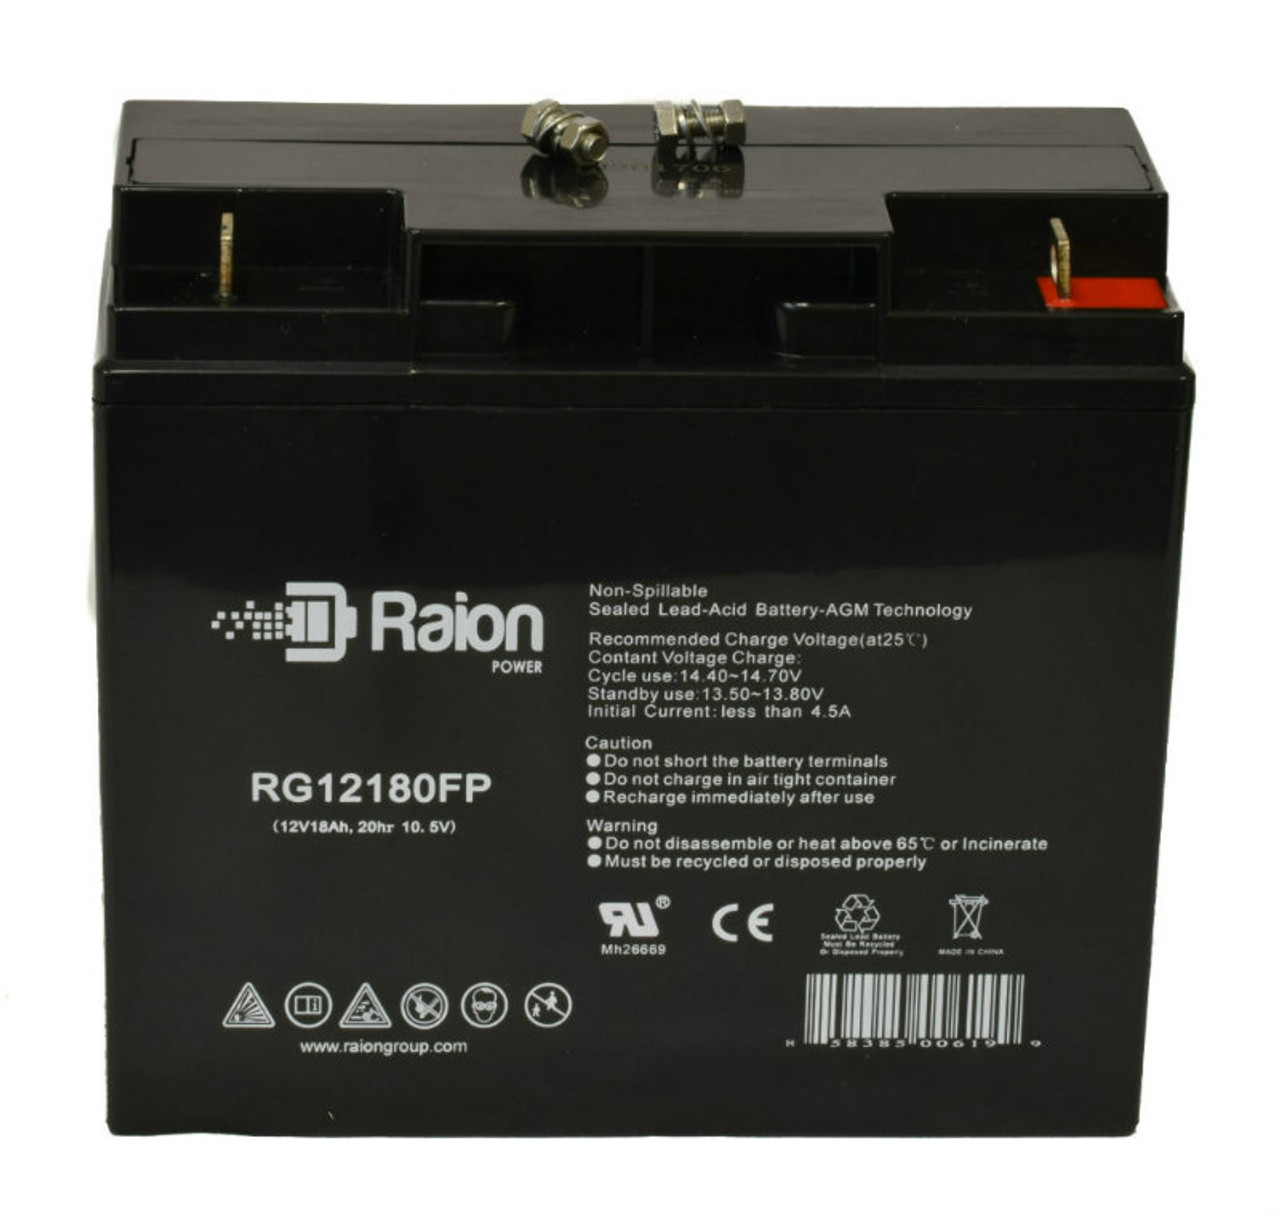 Raion Power RG12180FP 12V 18Ah Lead Acid Battery for Lightalarms OSG12E3